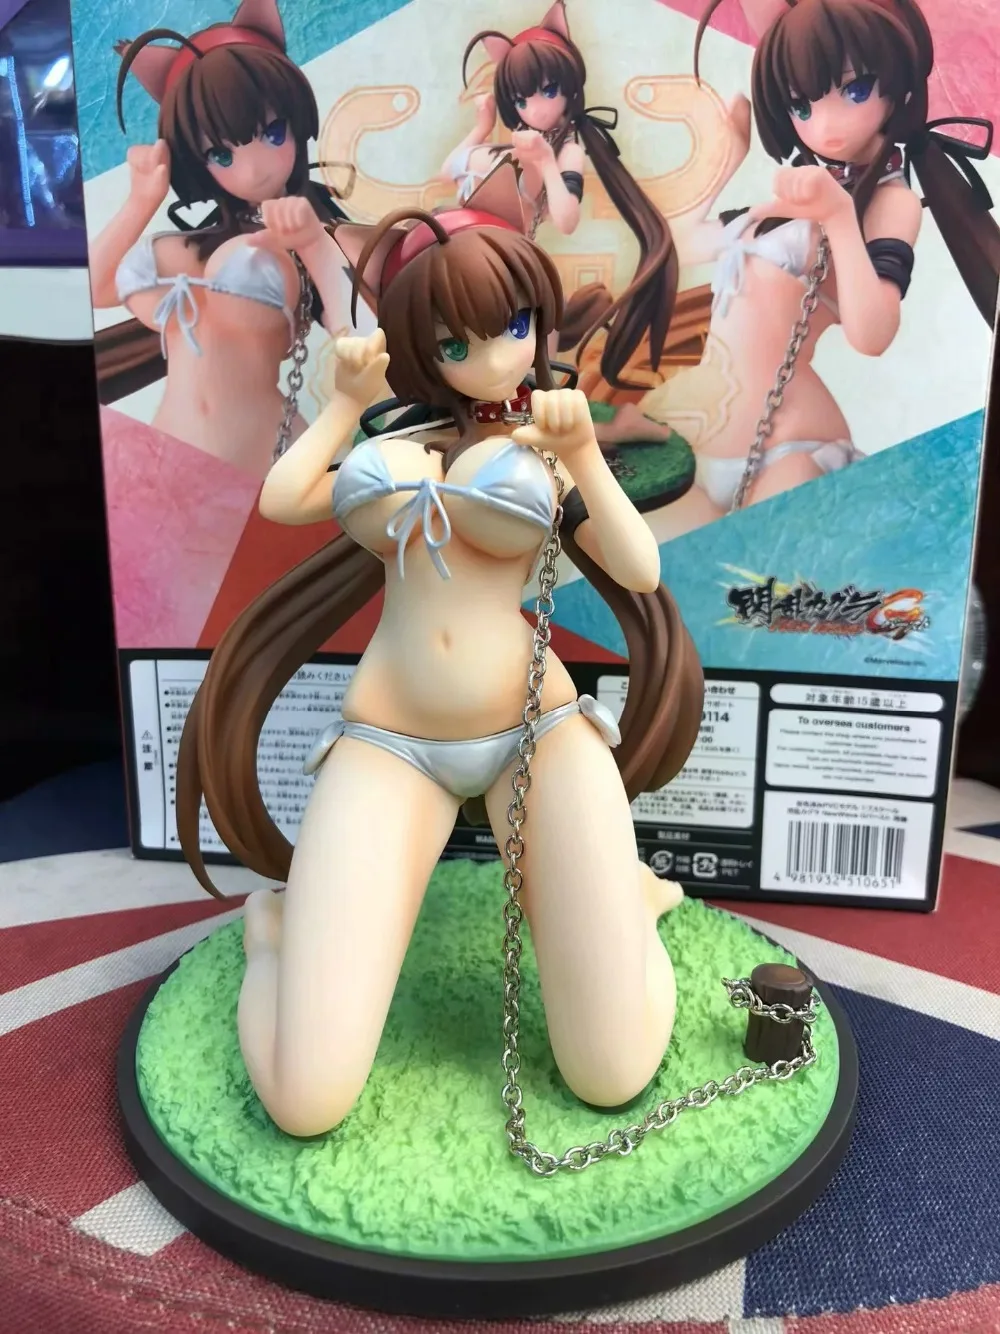 16 см Senran Kagura Burst Ryoubi сексуальная фигурка ПВХ игрушки коллекция кукла аниме мультфильм модель